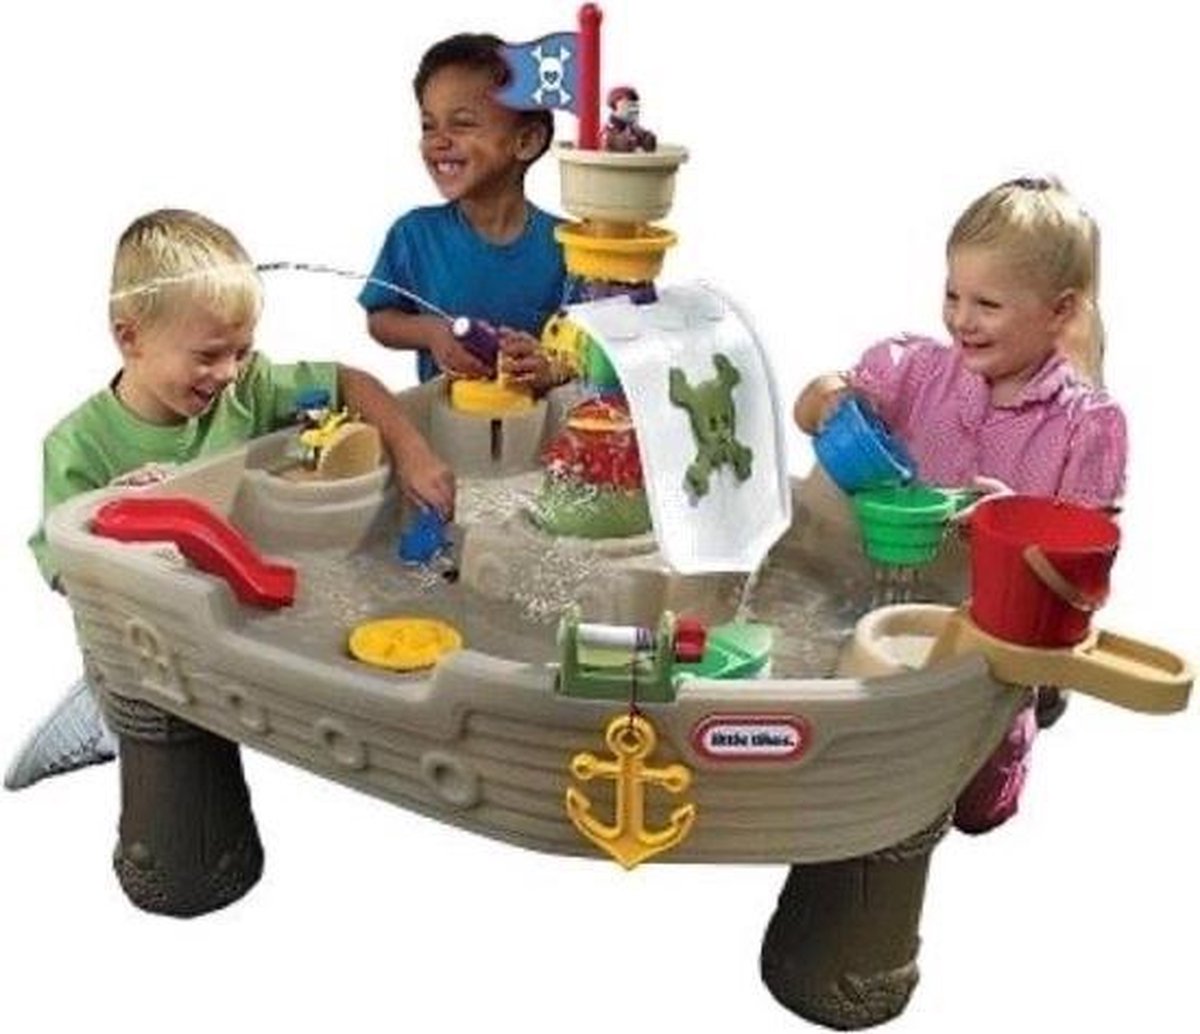 Little Watertafel Piratenboot - Zandtafel - Piratenschip - Buitenspeelgoed -... bol.com